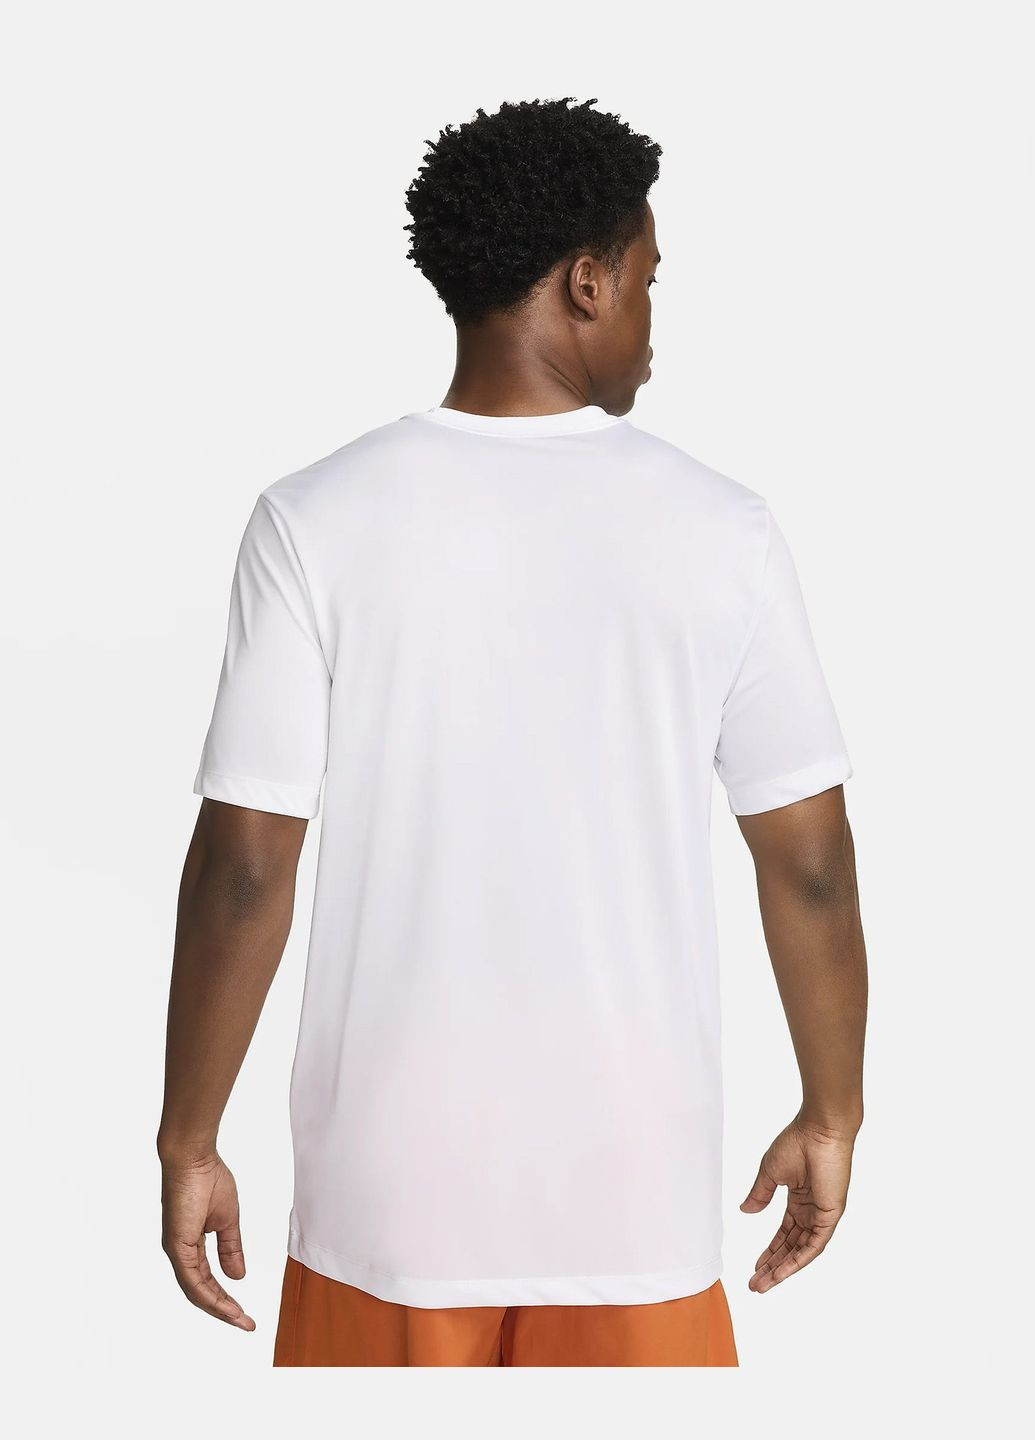 Біла футболка чоловіча drifit camo t-shirt fv8370-100 біла Nike